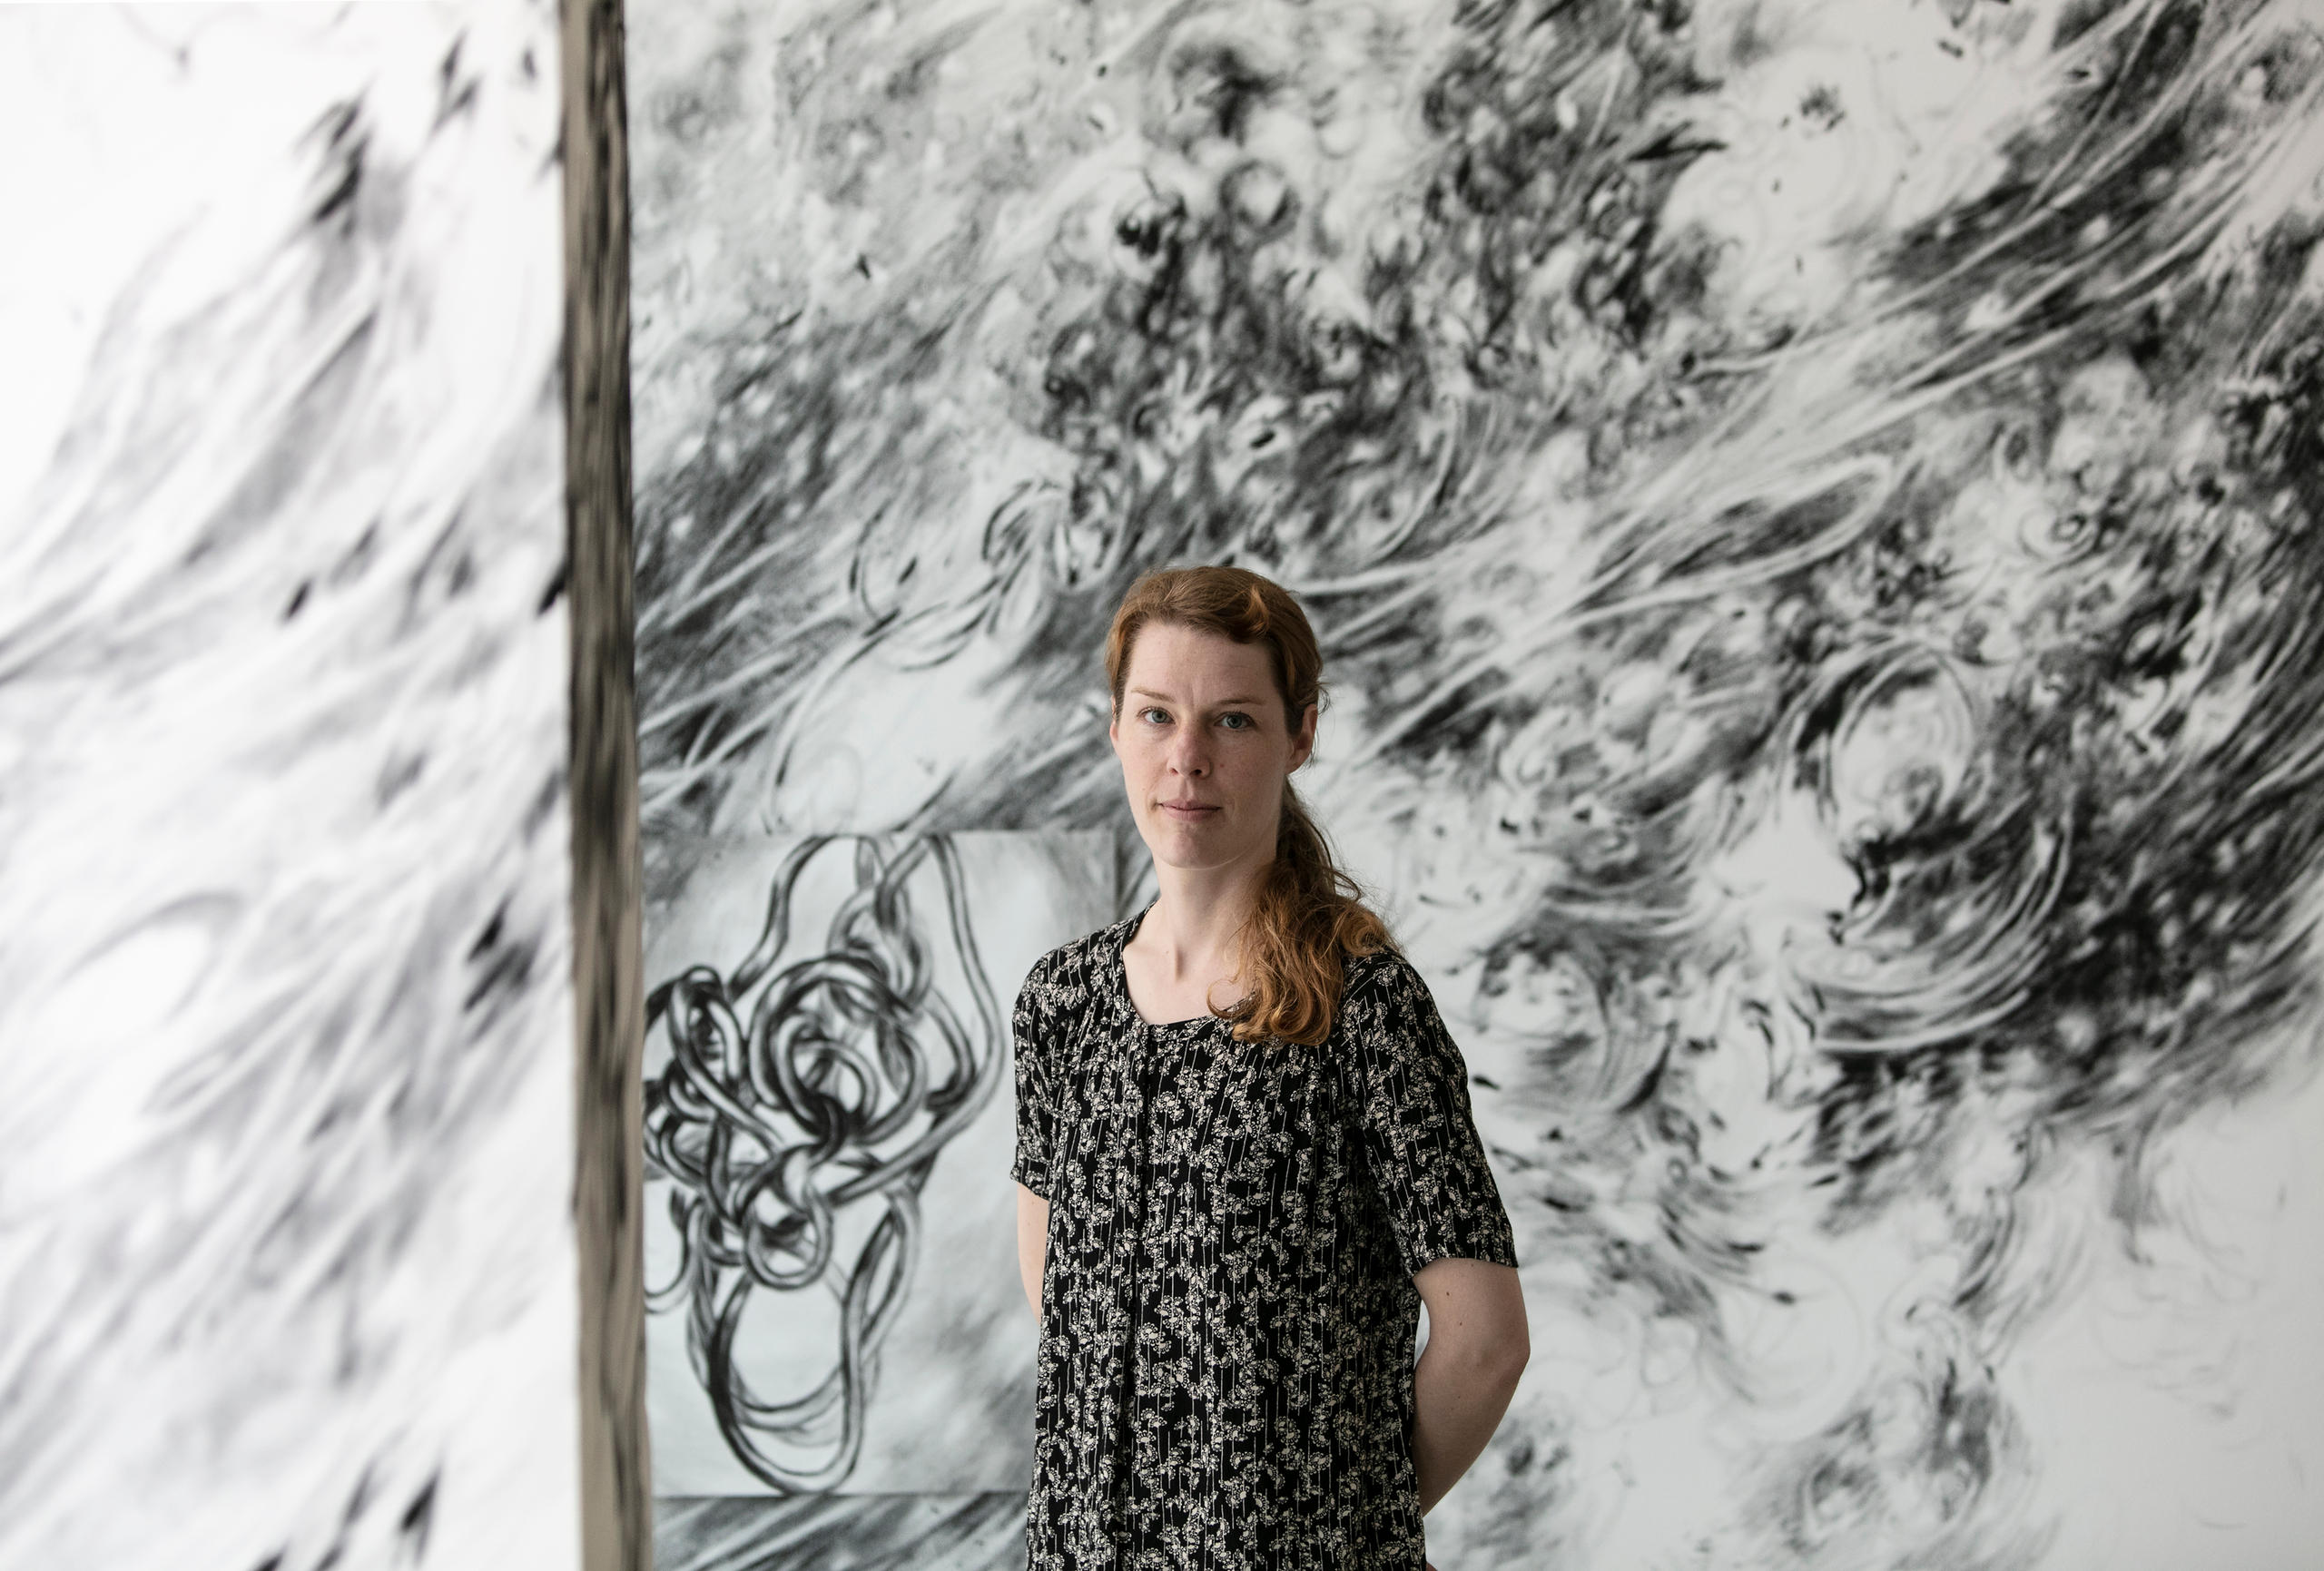 امرأة تقف أمام عمل فني من إنجازها في رواق فني بمدينة بازل